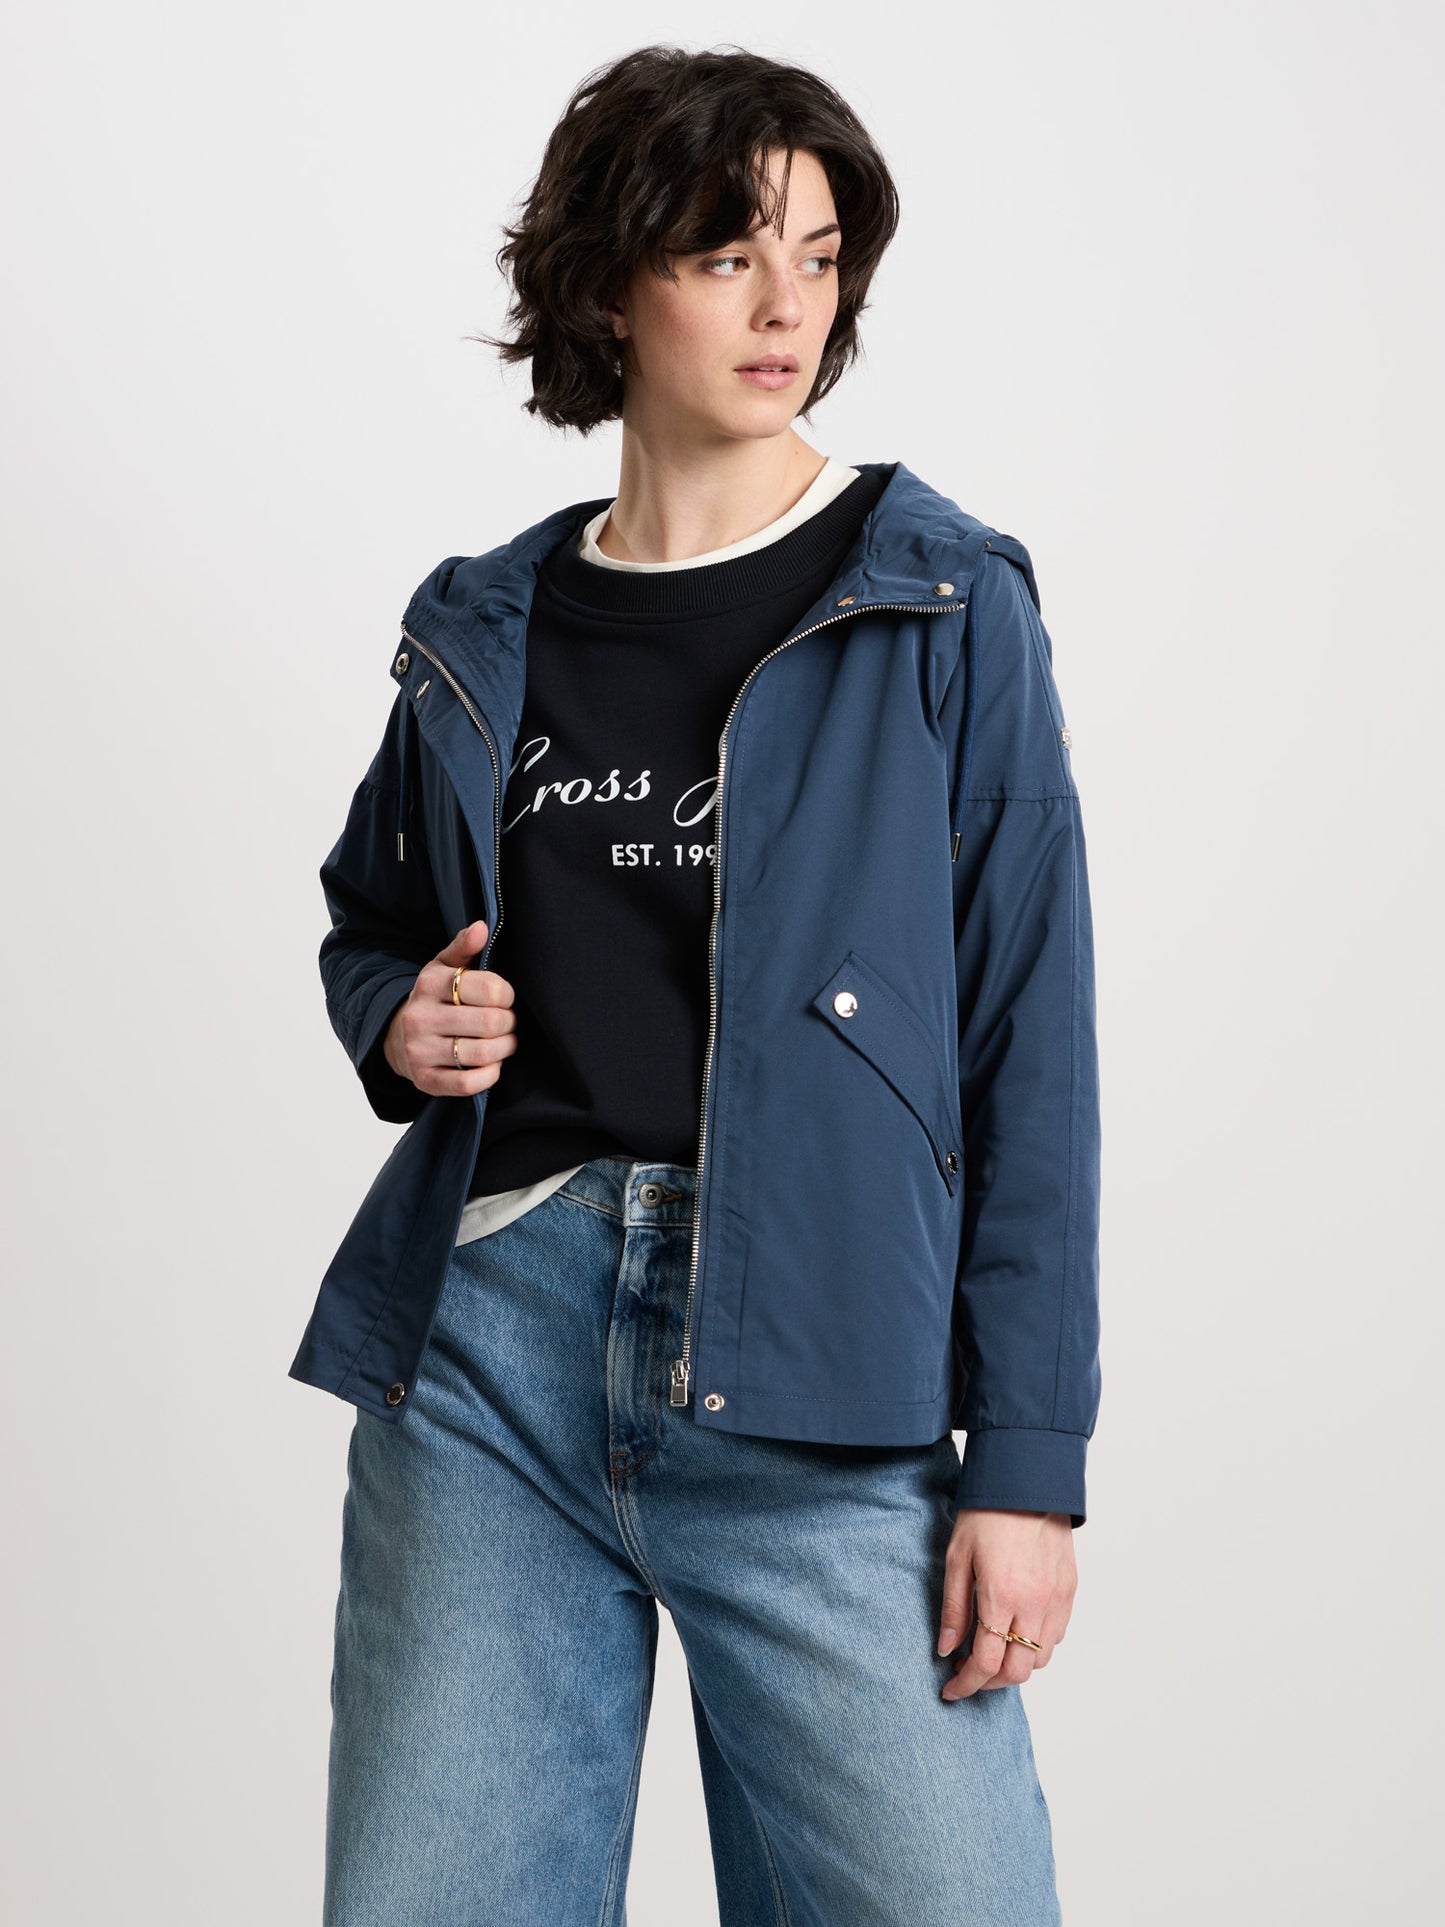 Damen Regular Jacke mit Kapuze, Reißverschluss und Druckknöpfen marineblau